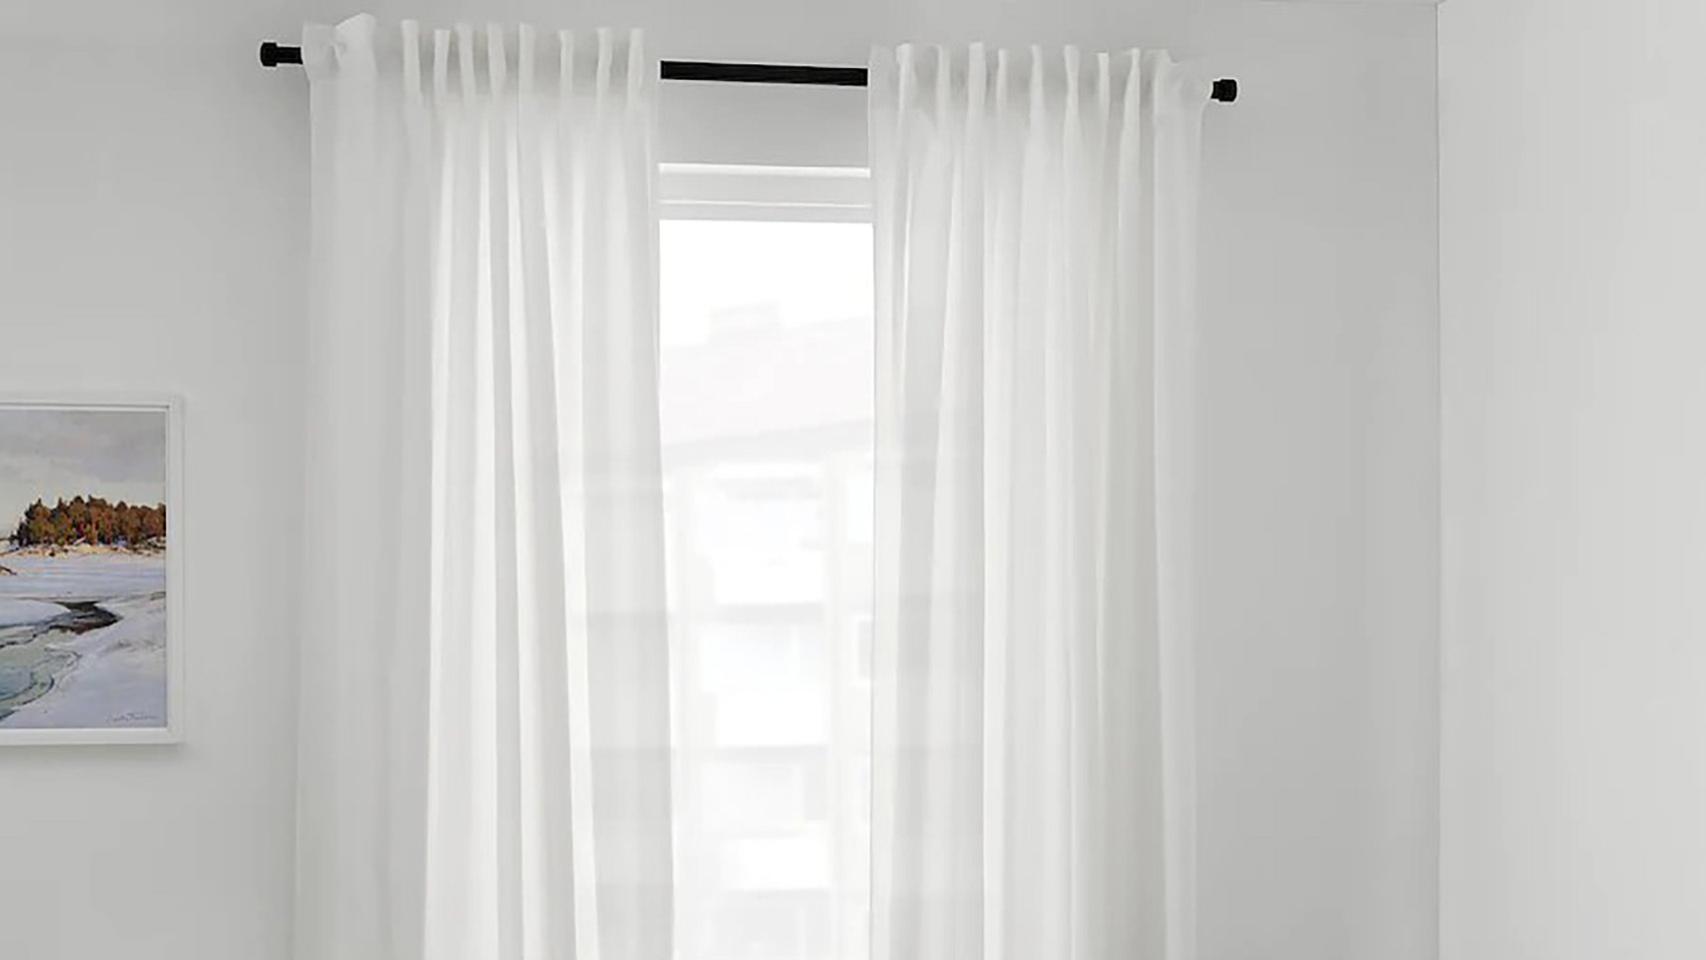 Ikea quiere poner solución a los vecinos molestos con unas cortinas que  absorben el ruido